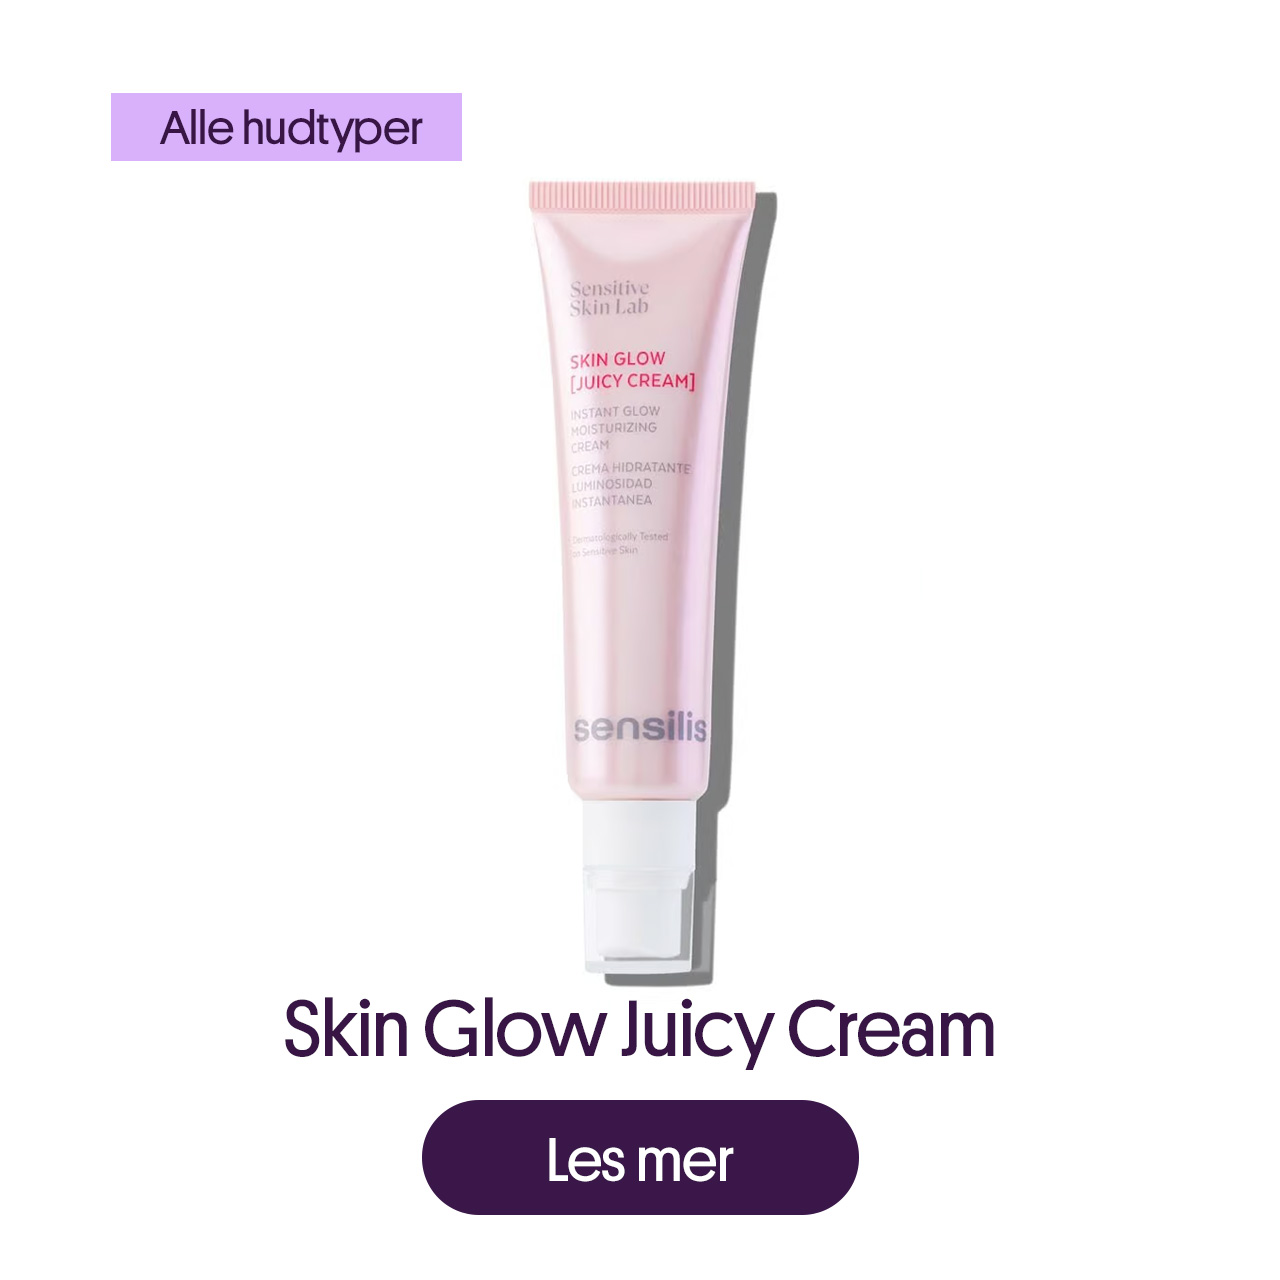 Skin Glow Juicy Cream. For alle hudtyper. Les mer